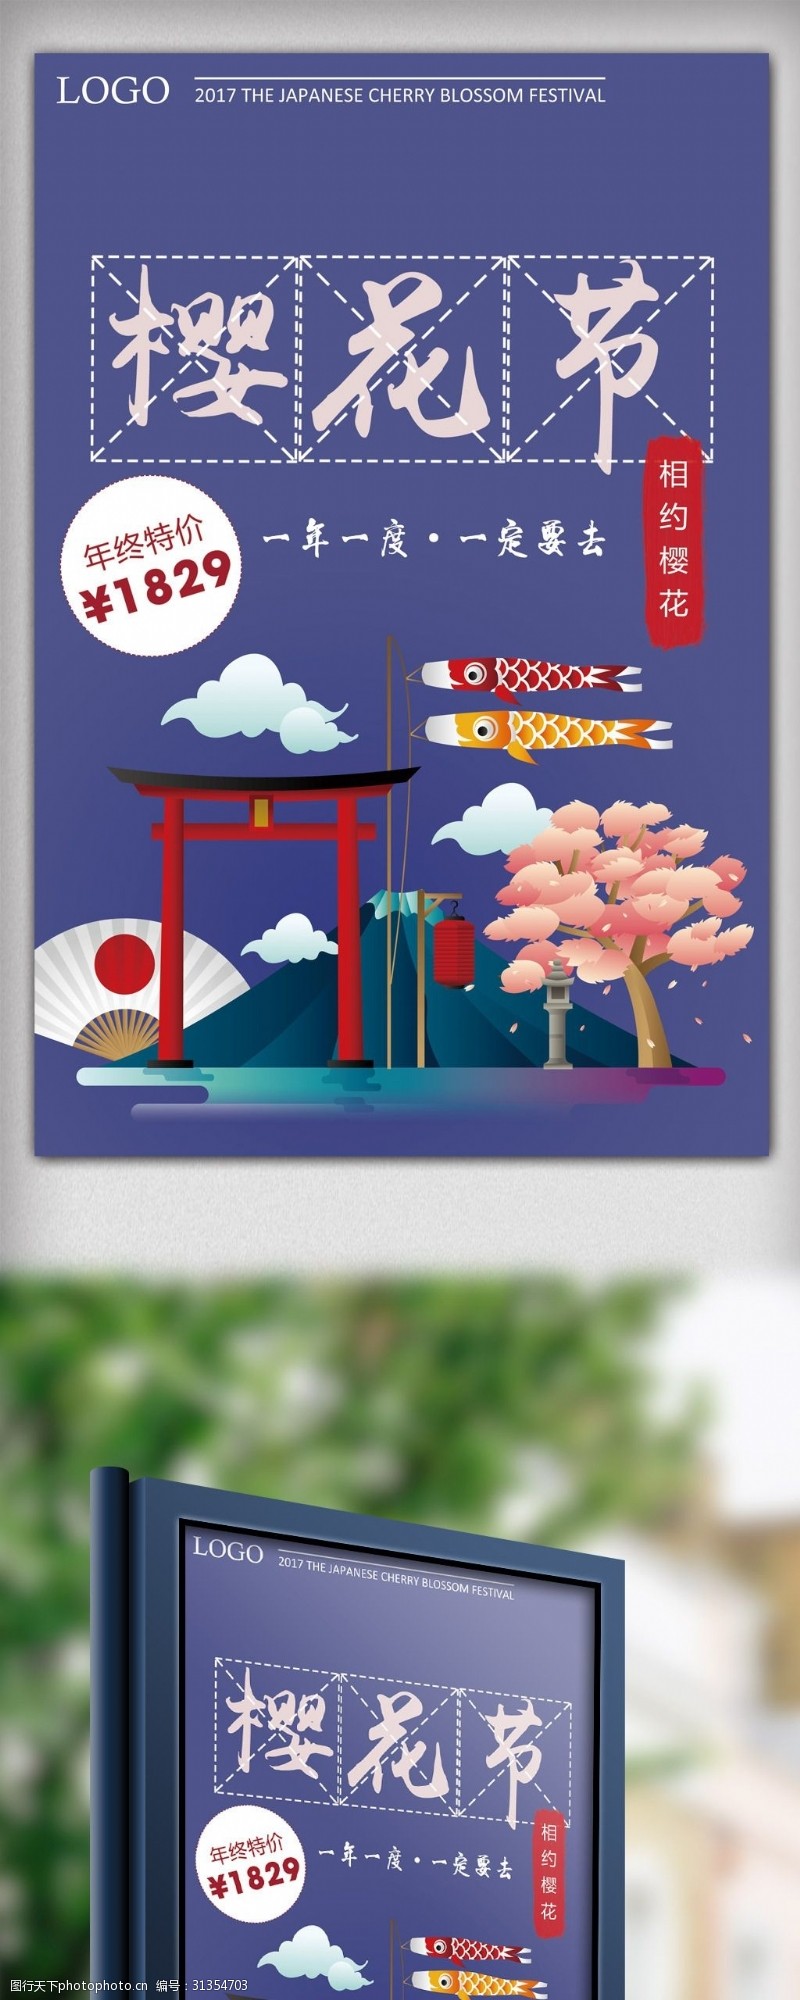 日本旅游广告樱花节日本旅游小清新psd模板